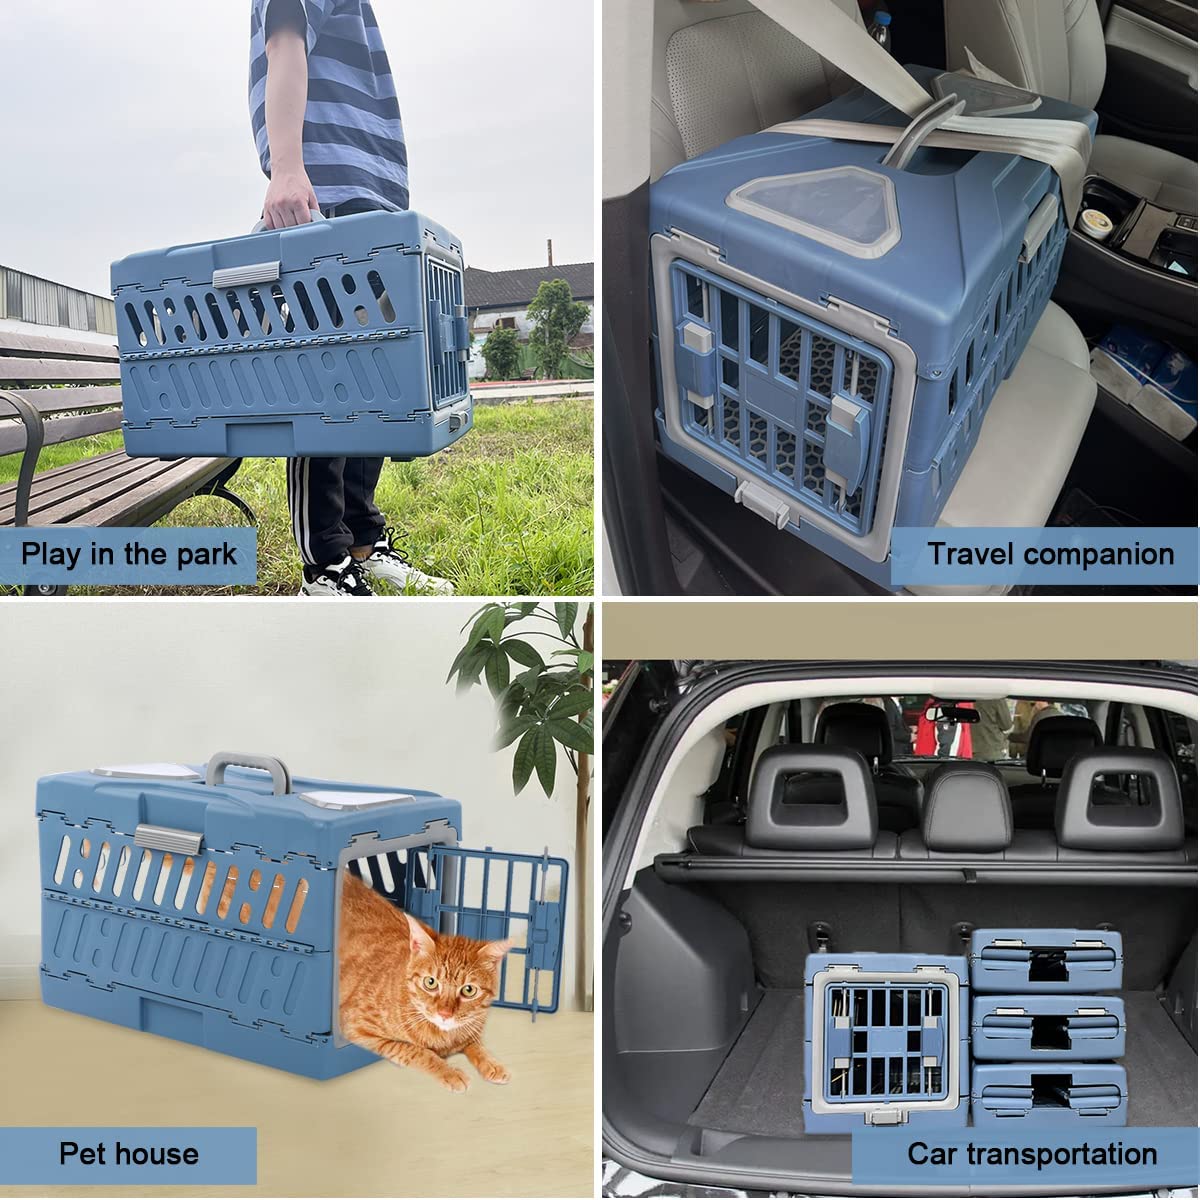  جعبه مسافرتی حیوان خانگی از پلاستیک بادوام انعطاف پذیر استفاده می کند تا اطمینان حاصل شود که حامل مسافرتی سگ پایدارتر است و مجهز به بشقاب ادرار است